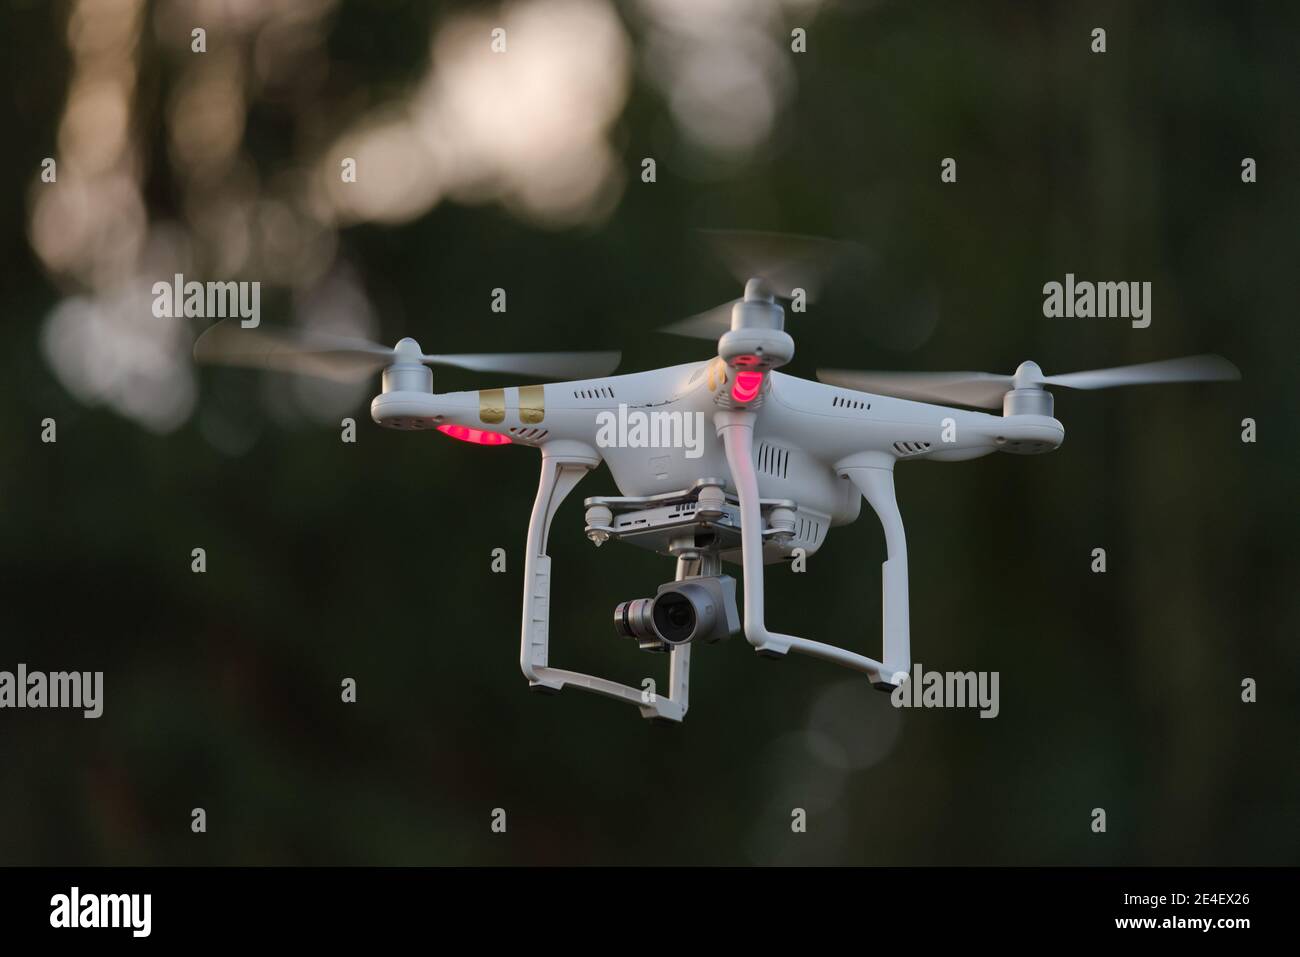 13 - les hélices tournent alors que ce drone quadcopter tourne avec la charge utile de la caméra. Capacité de visualisation en vol pour la première personne, avec utilisation de la vidéographie cinématographique. Banque D'Images